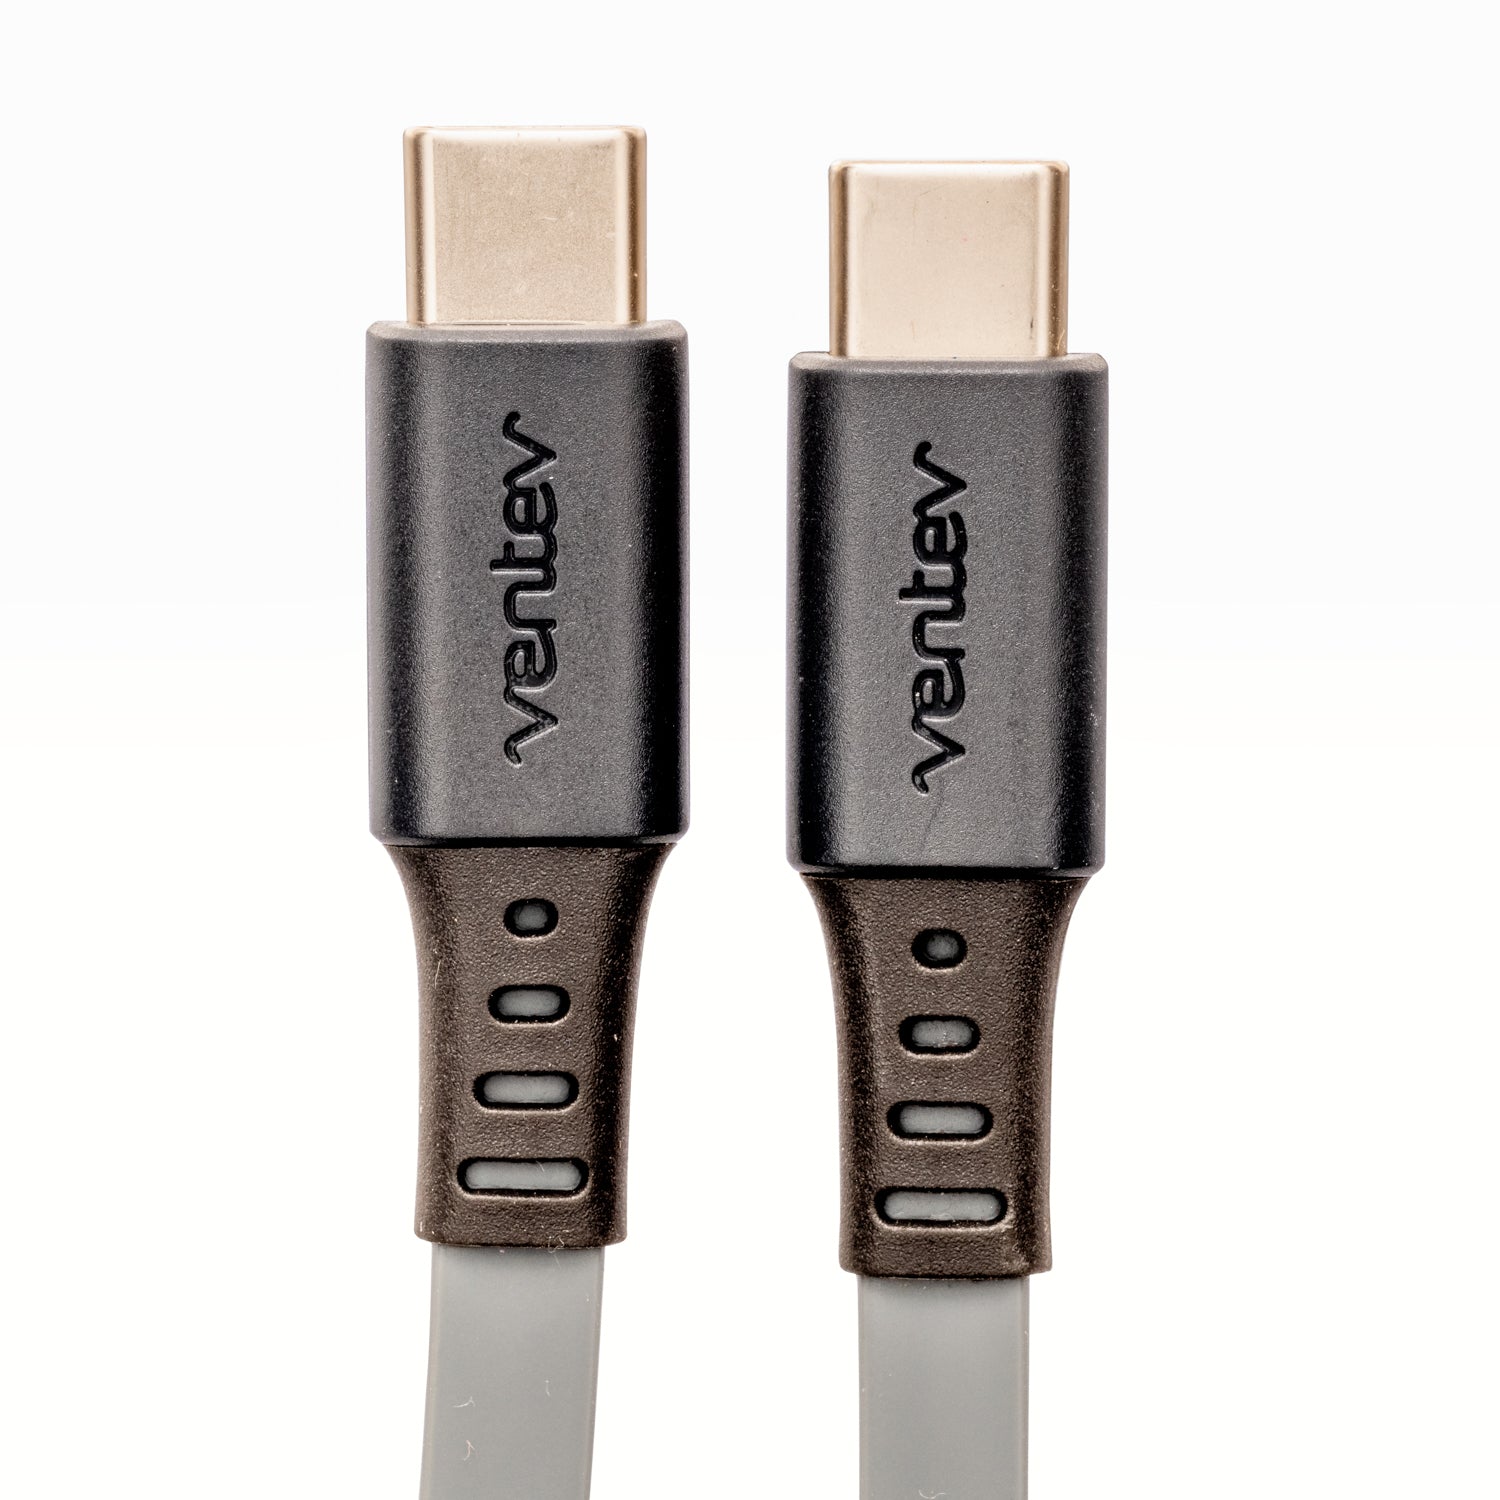 Chargeur secteur USB-C - Design compact, recharge dynamique et